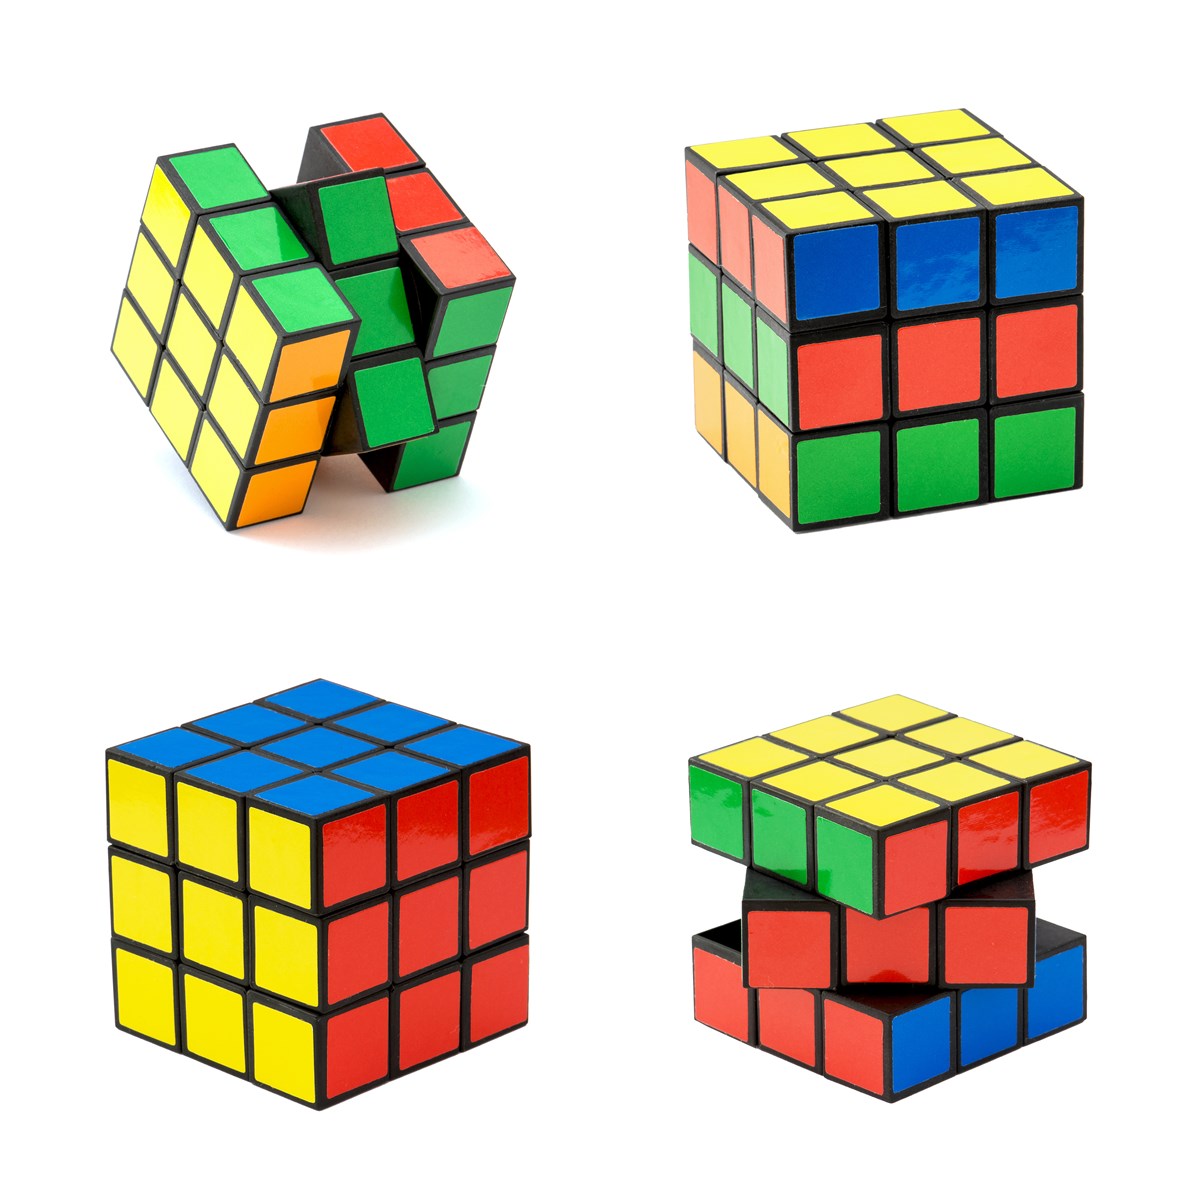 Rubiks terningen... Kilden til megen glæde og frustration